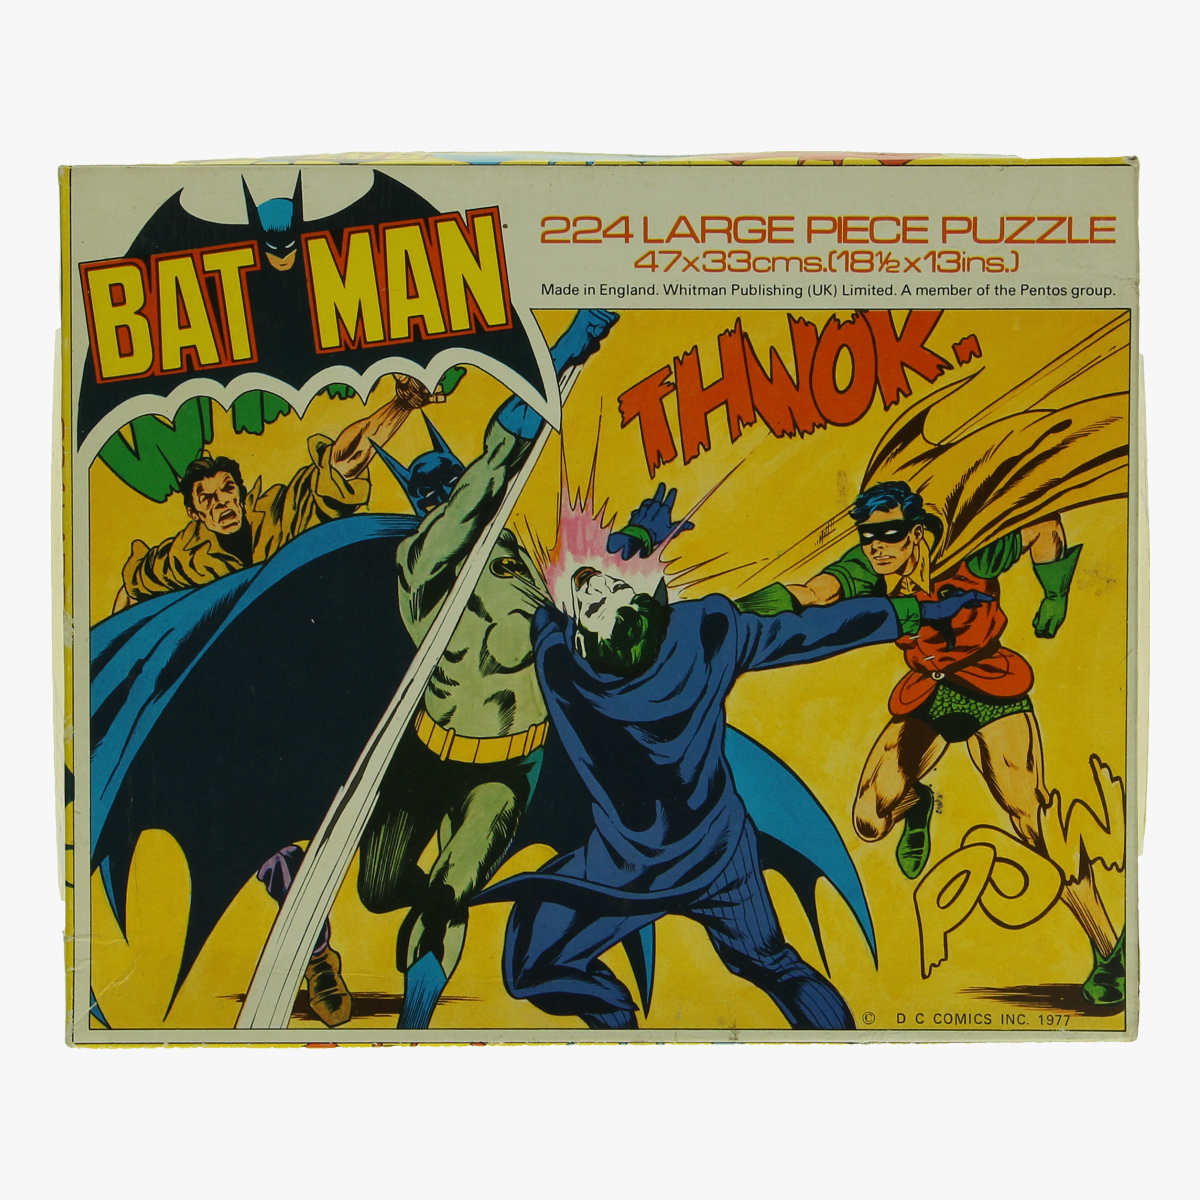 Afbeeldingen van puzzel batman 1977 made in engeland